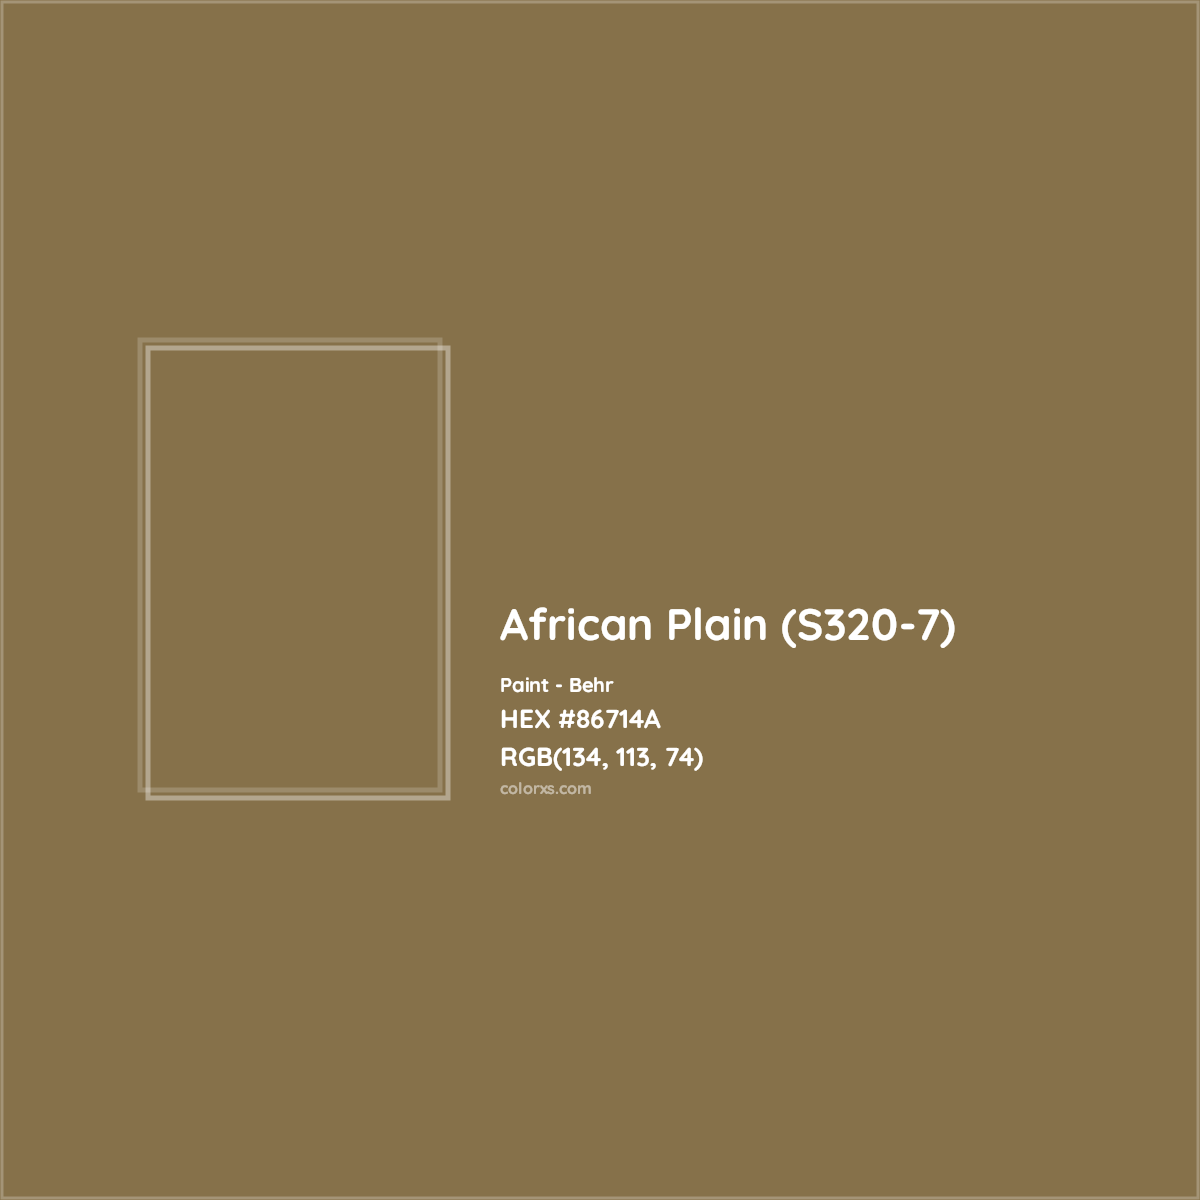 HEX #86714A African Plain (S320-7) Paint Behr - Color Code